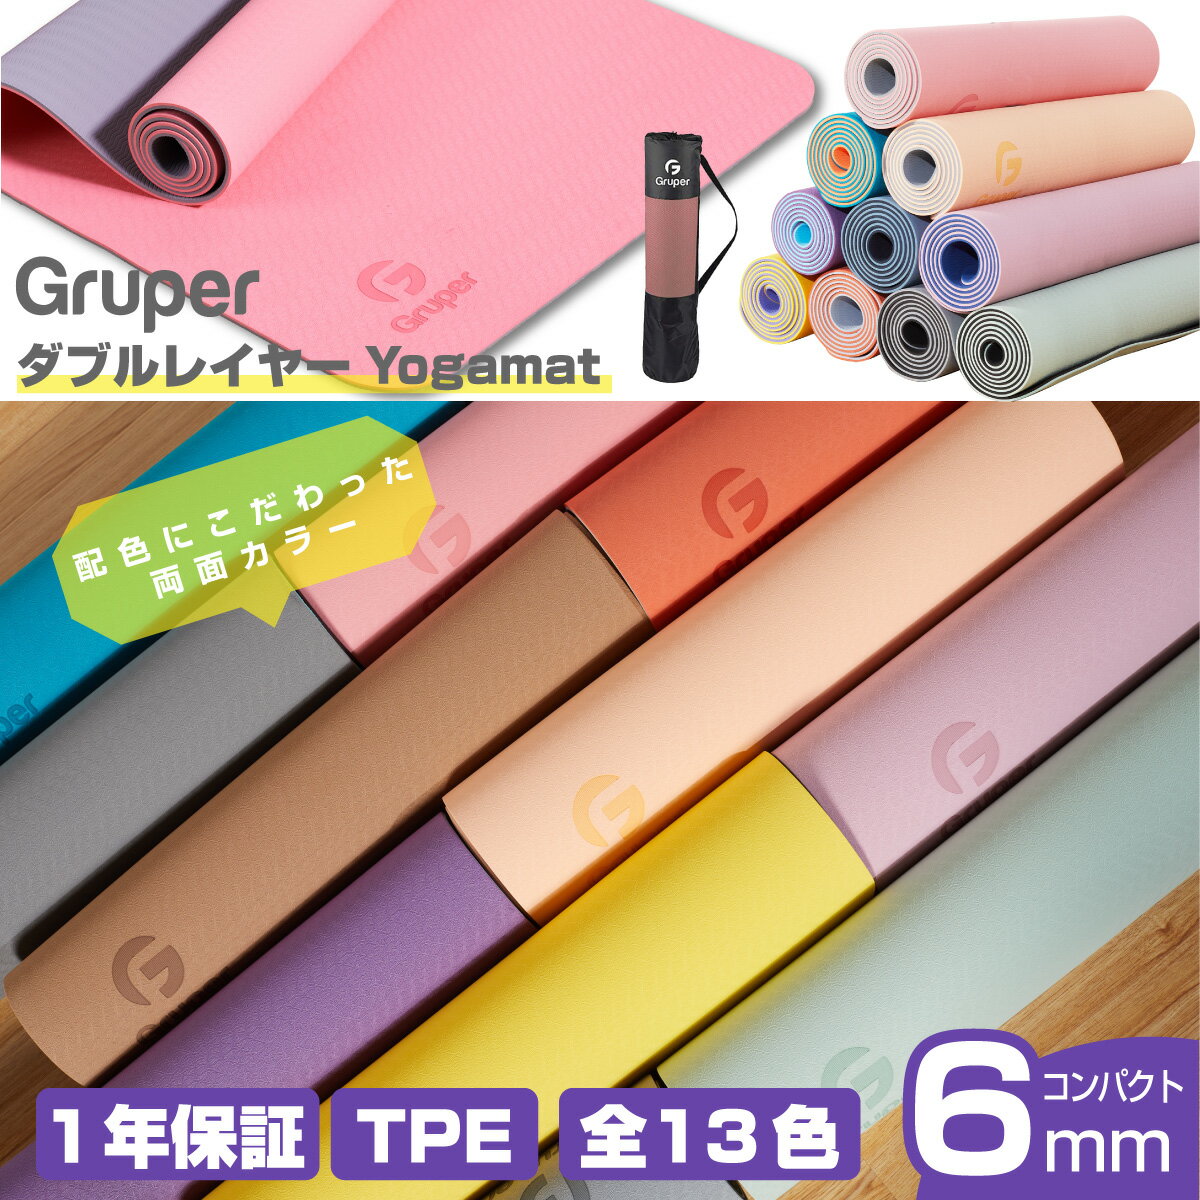 【第1位】Gruper（グルパー）『ヨガマット6mm』